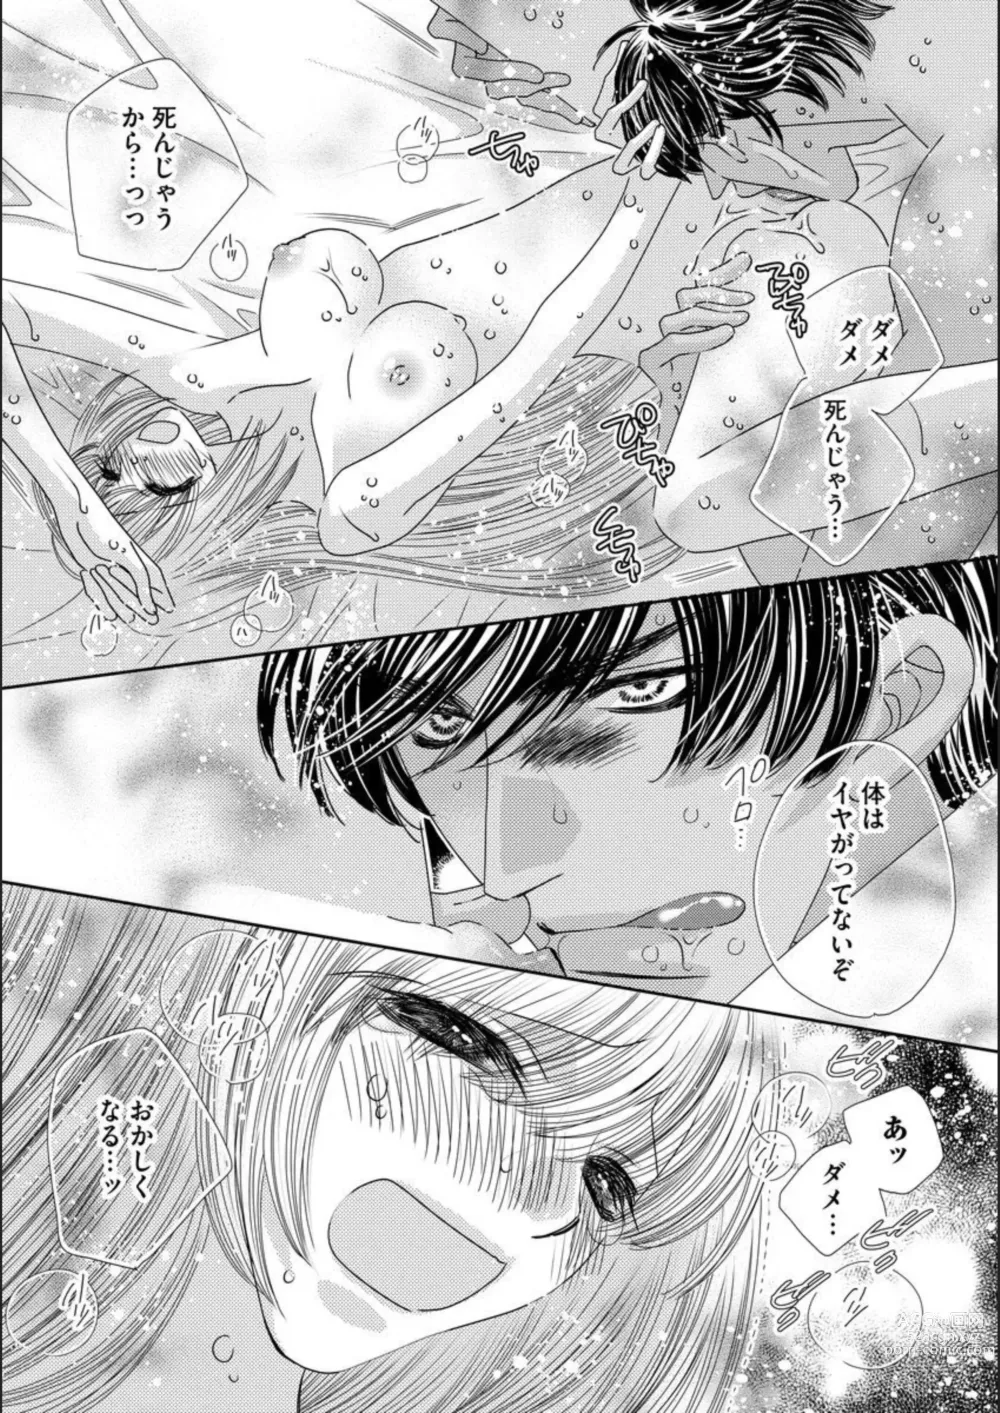 Page 5 of manga Ore-sama Seek no Hanayome Dorei 1